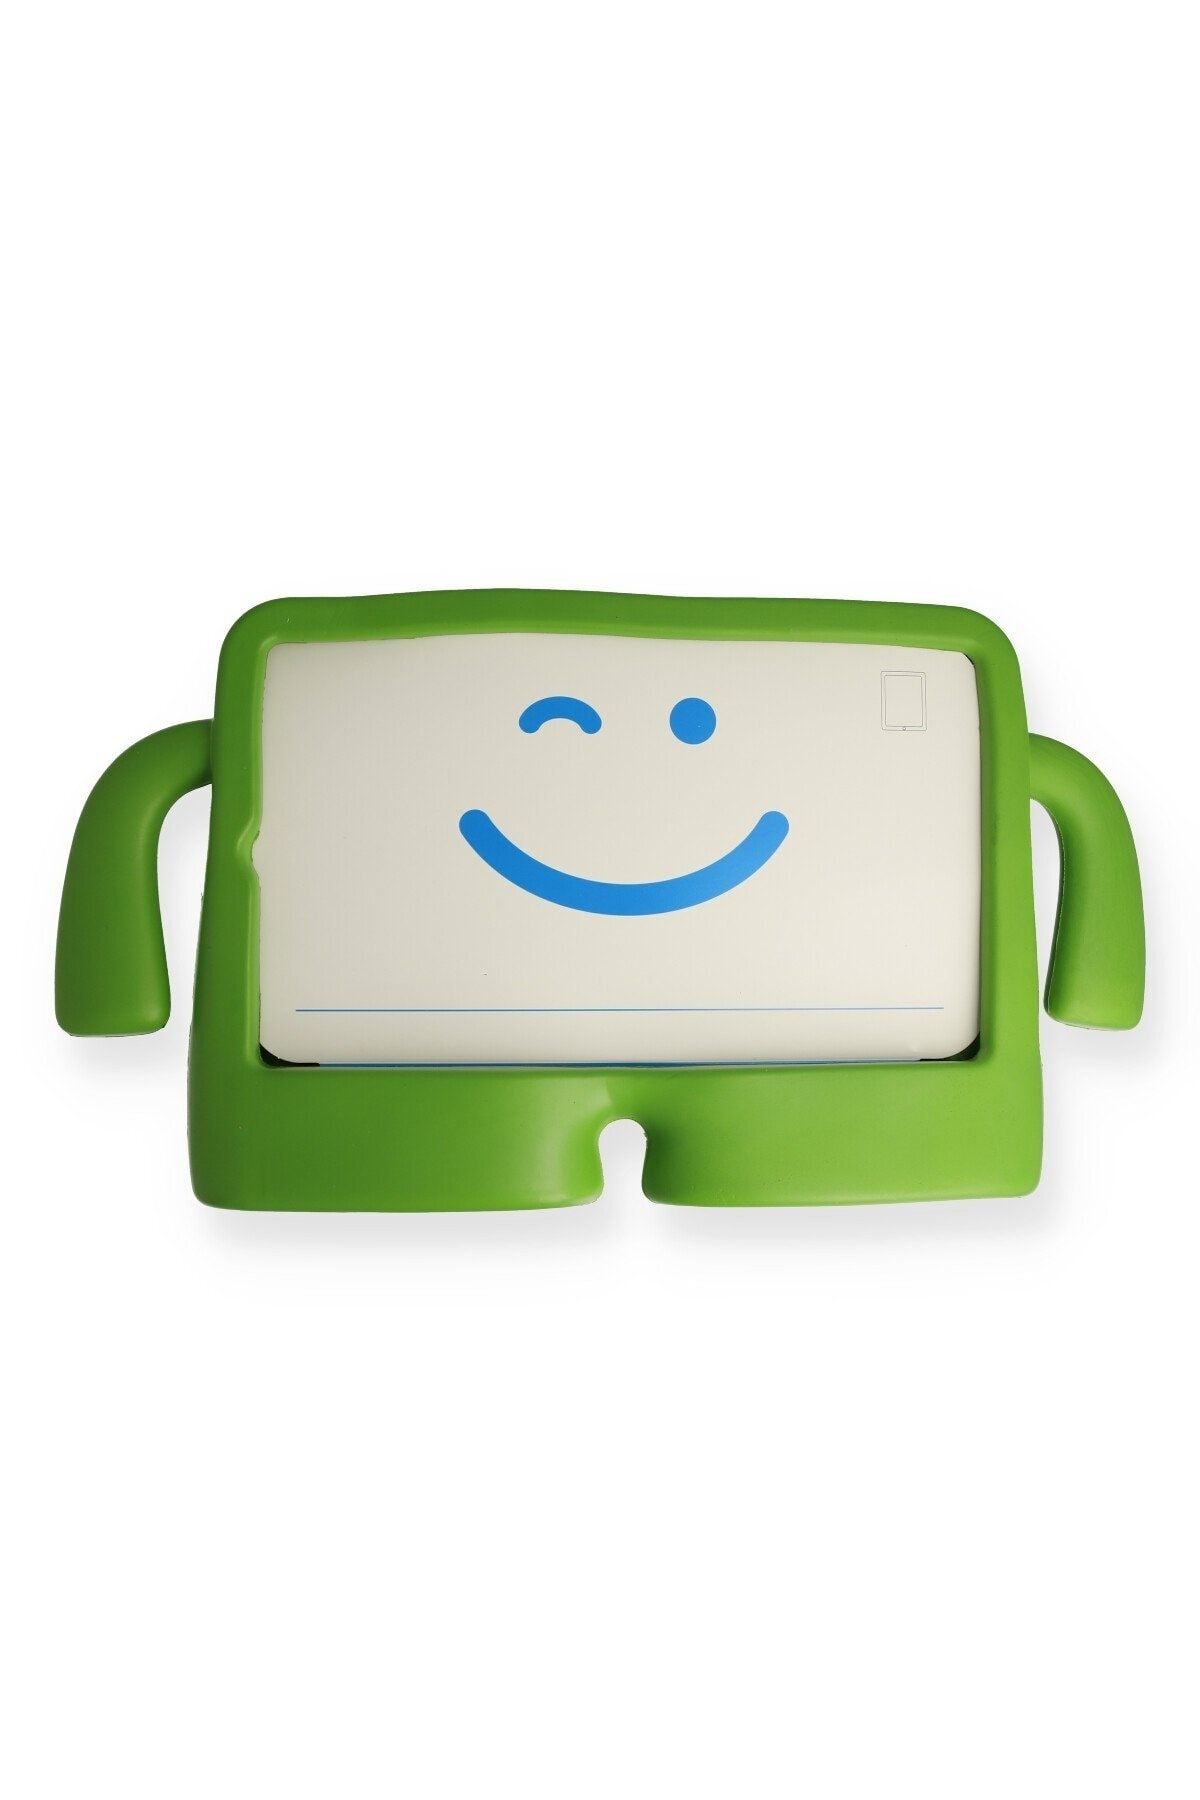 Bilişim Aksesuar Ipad Air 2 9.7 Kılıf Karakter Tablet Silikon - Yeşil